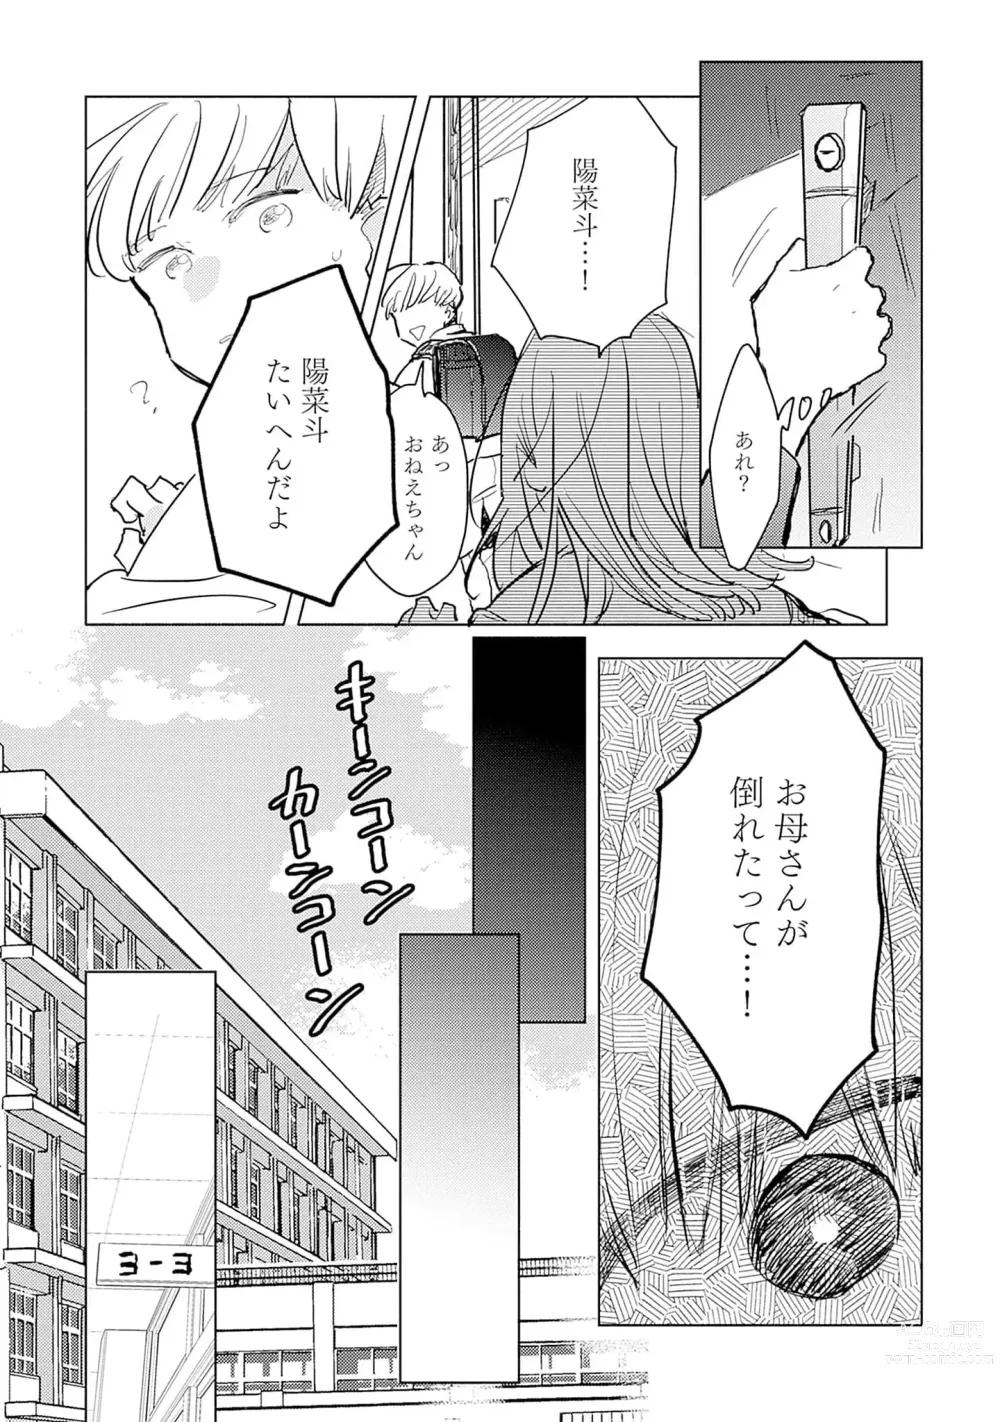 Page 23 of manga Strawberry na Days 2